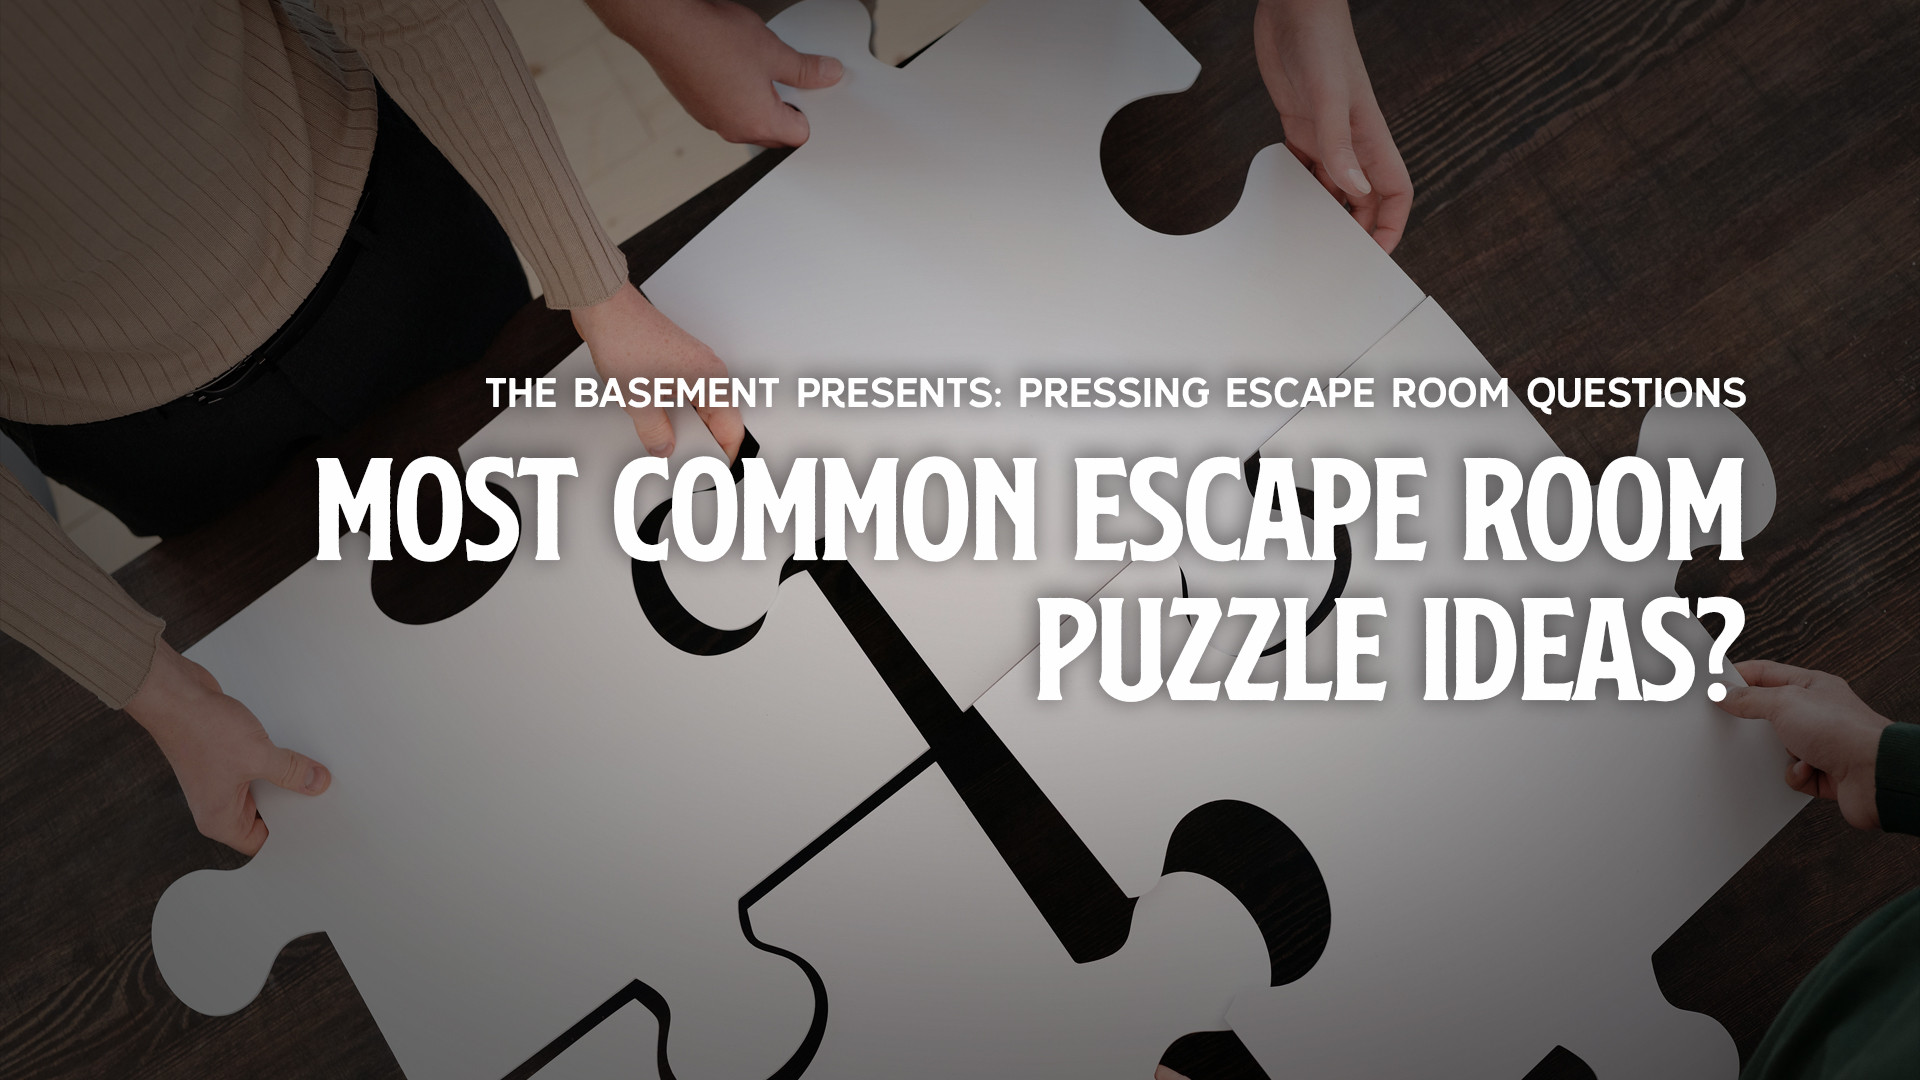 The Most Common Escape Room Puzzle Ideas